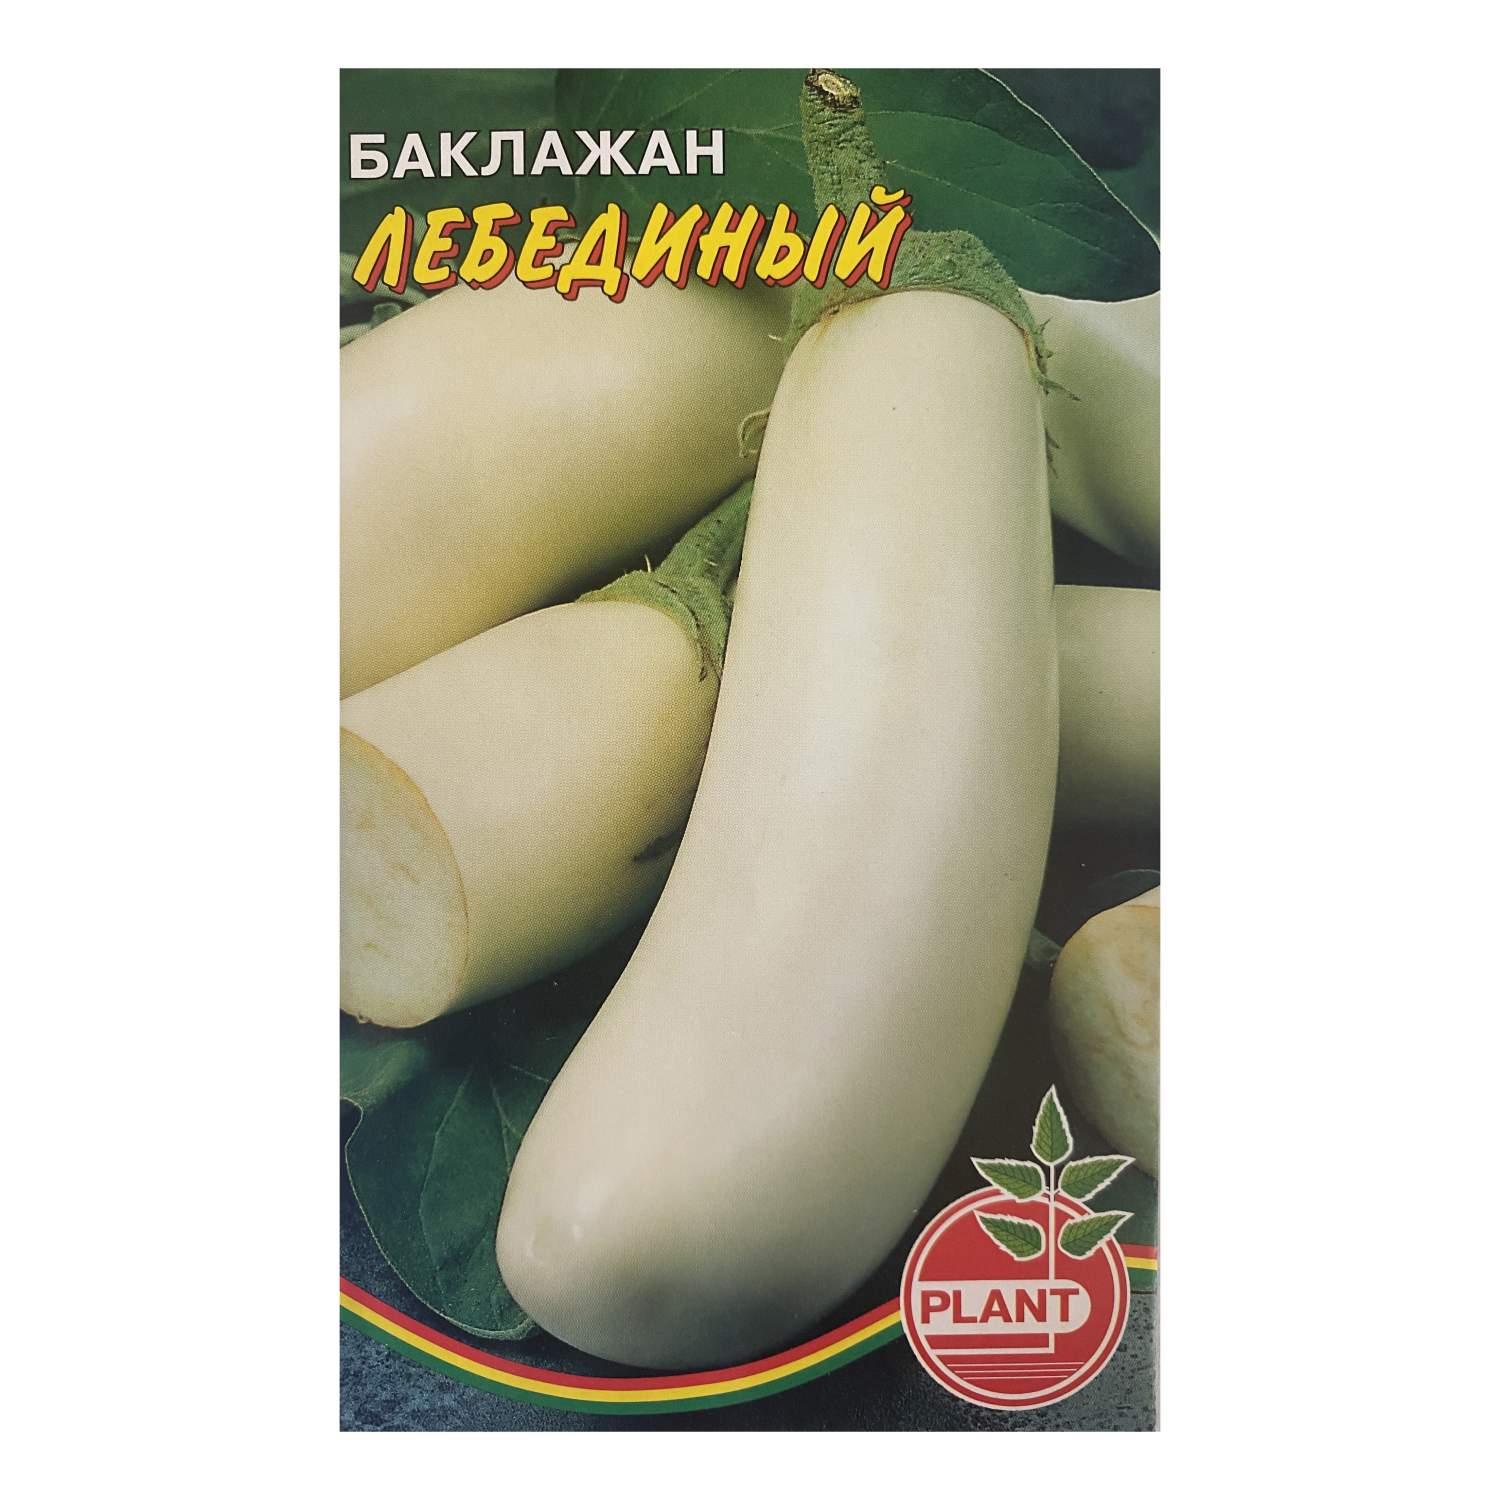 Семена баклажан Plant Лебединый 1 уп. - купить в Москве, цены на Мегамаркет